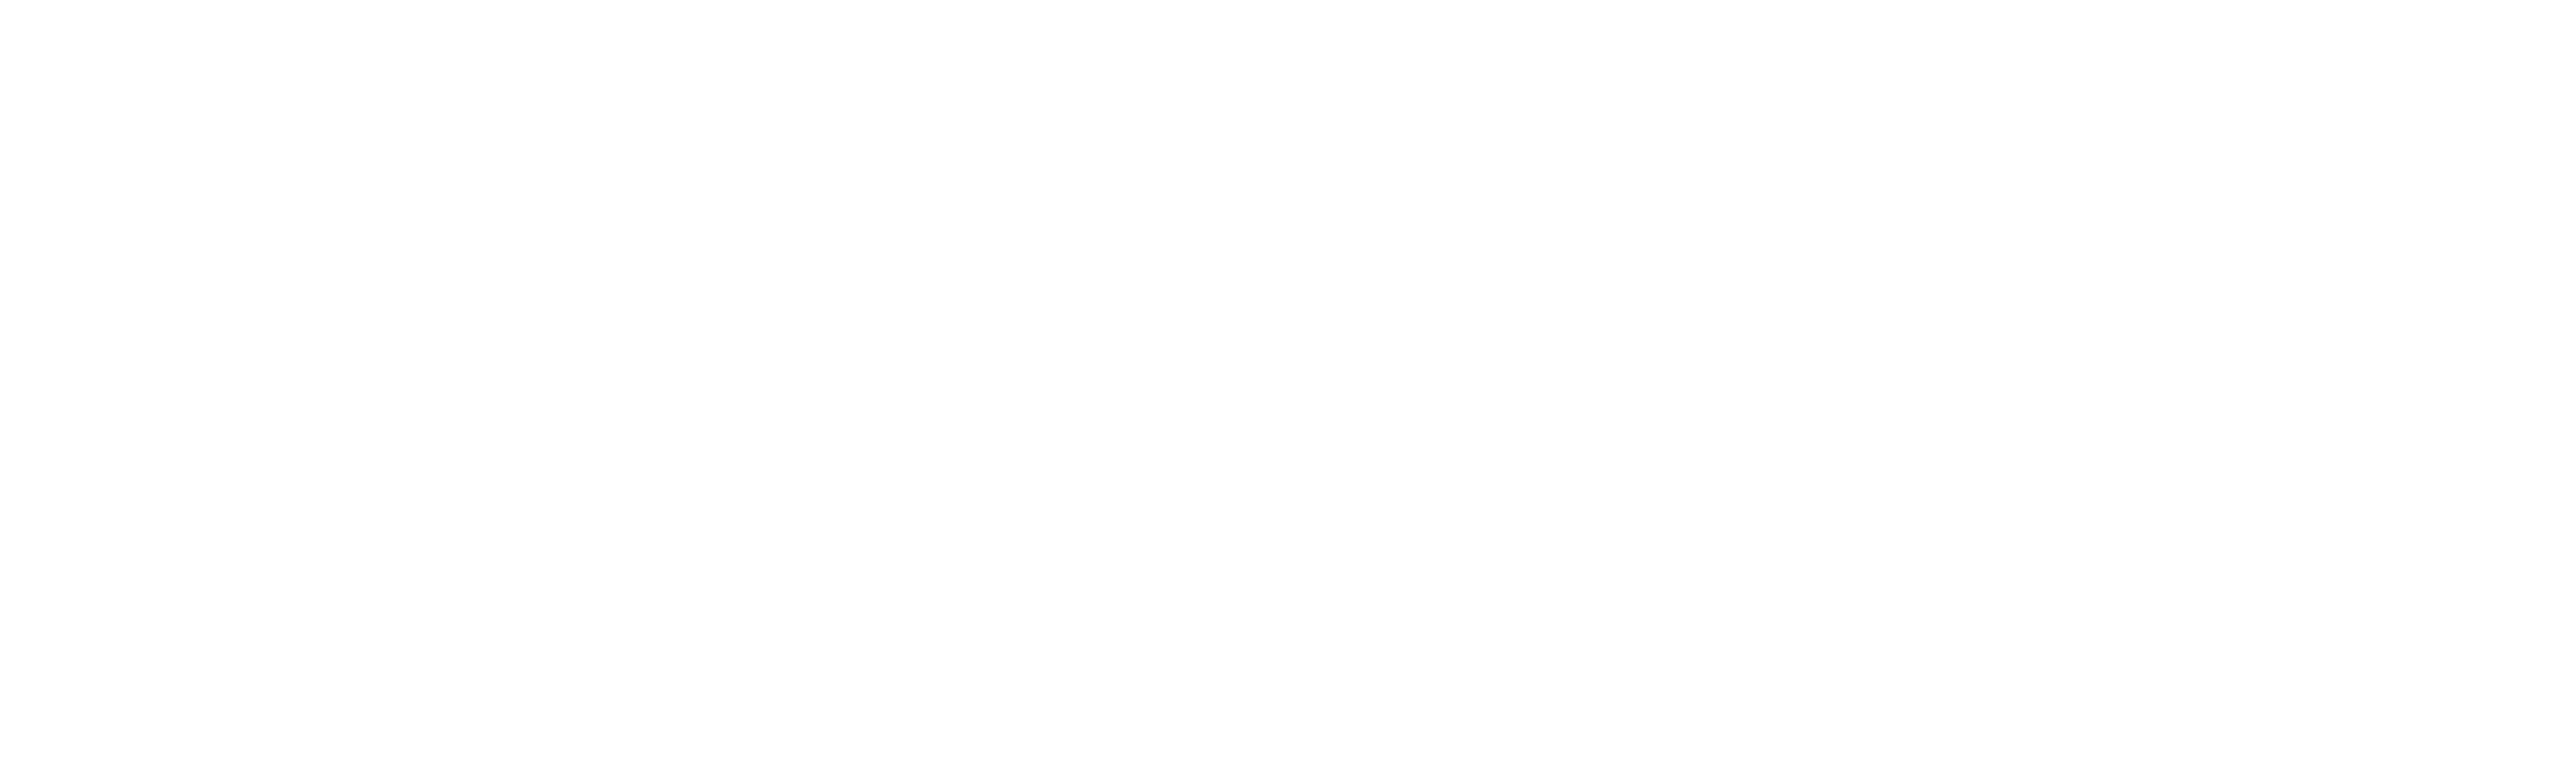 Dr Sturm Full Color Logo white